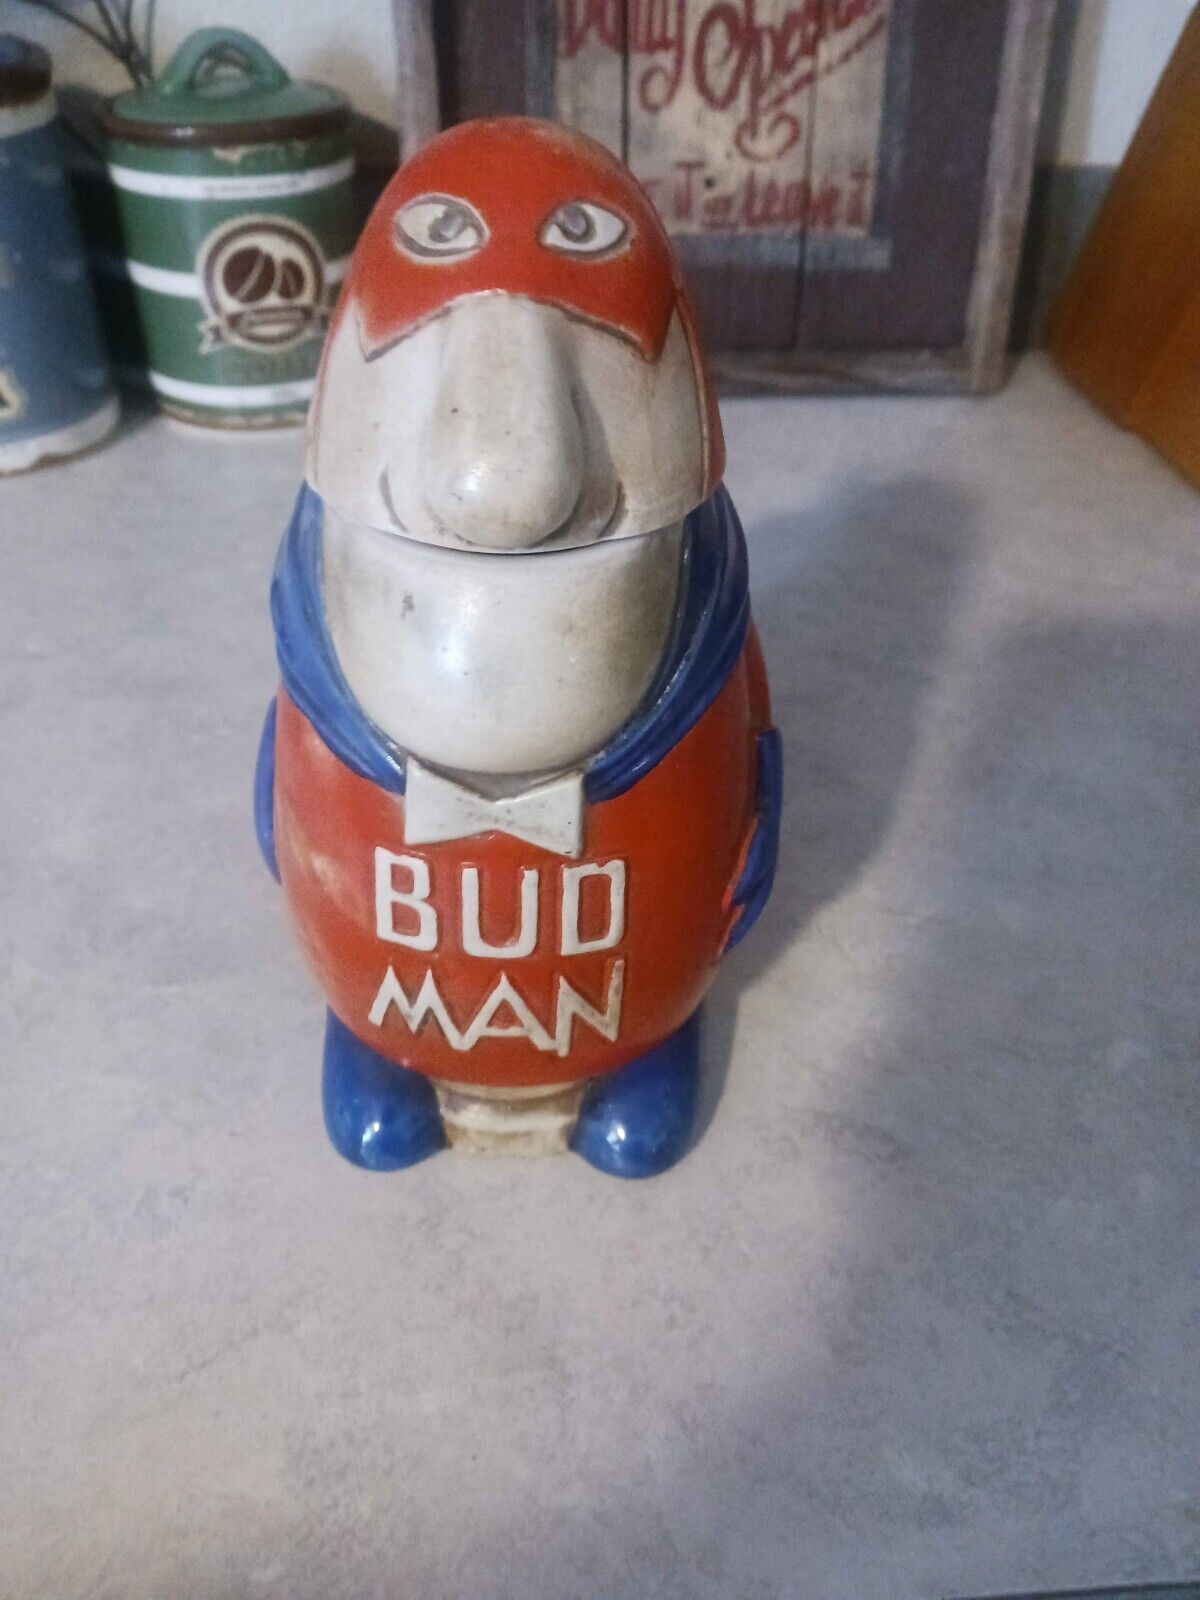 Vintage Bud Man Budman Ceramarte Stein Budweiser Anheiser Busch *Damaged Read*